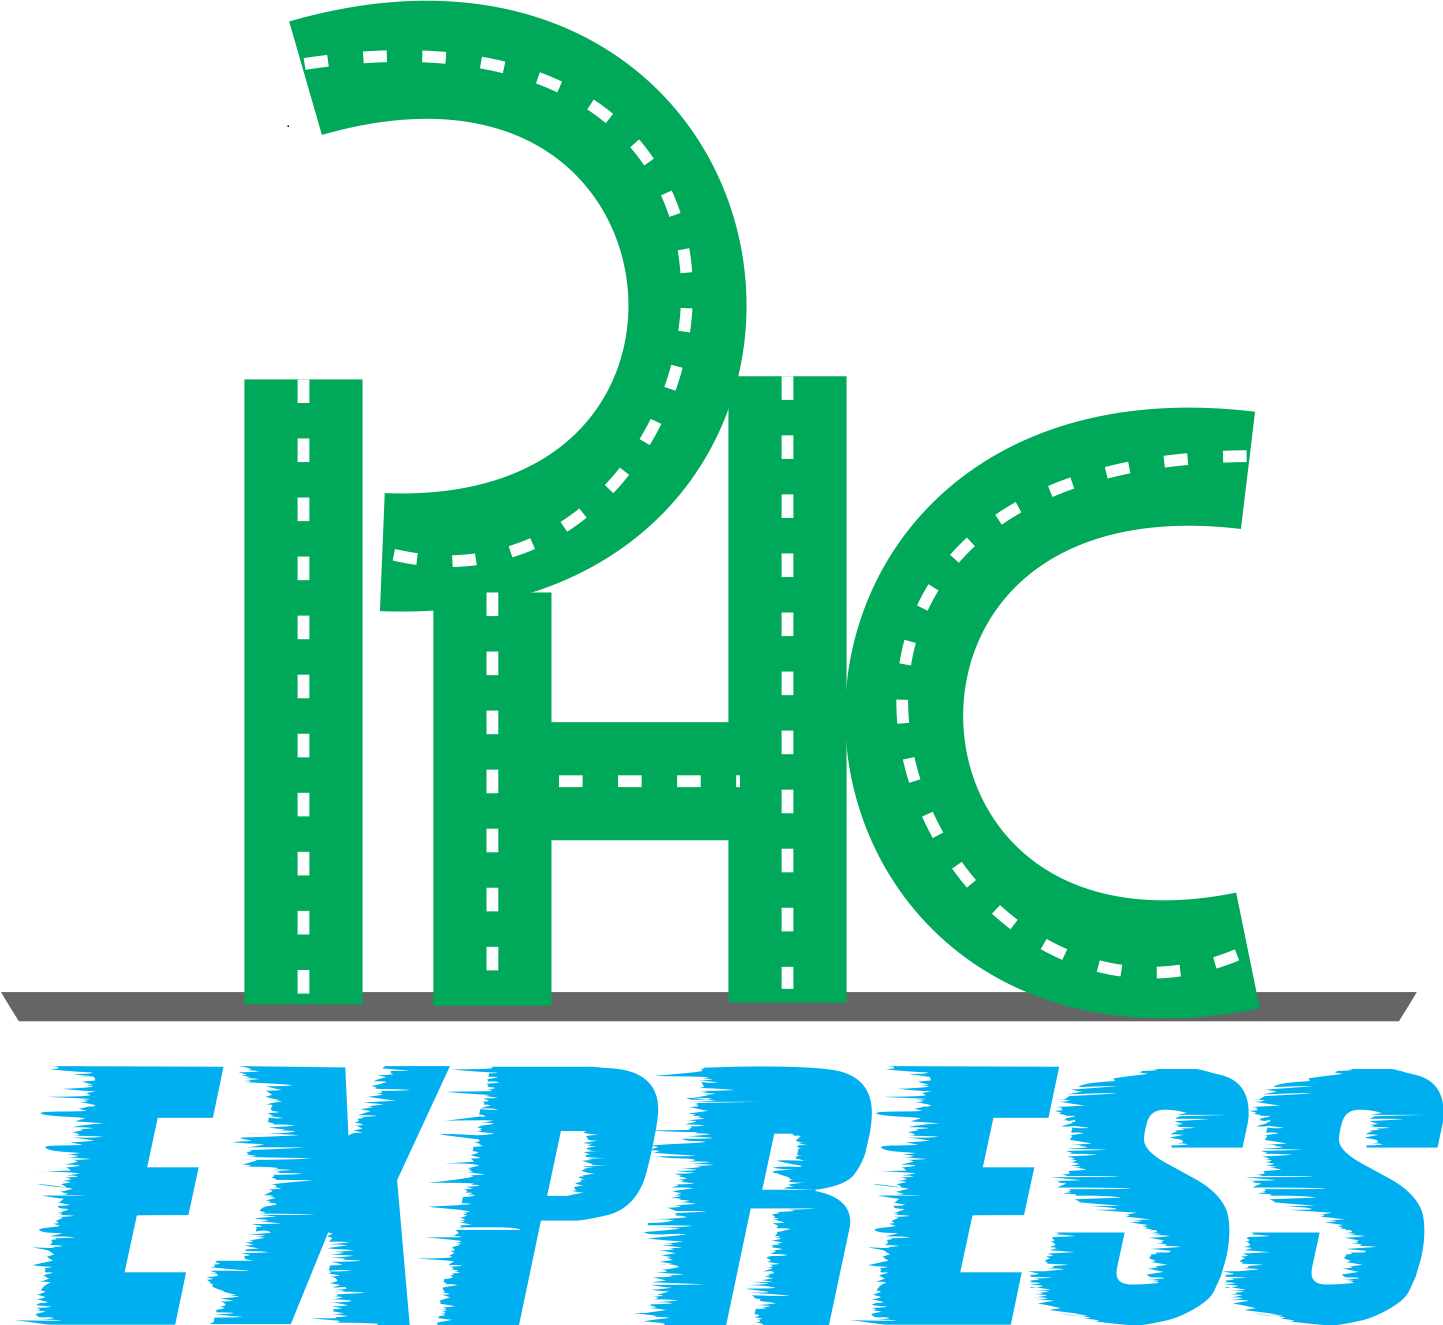 PHC Express